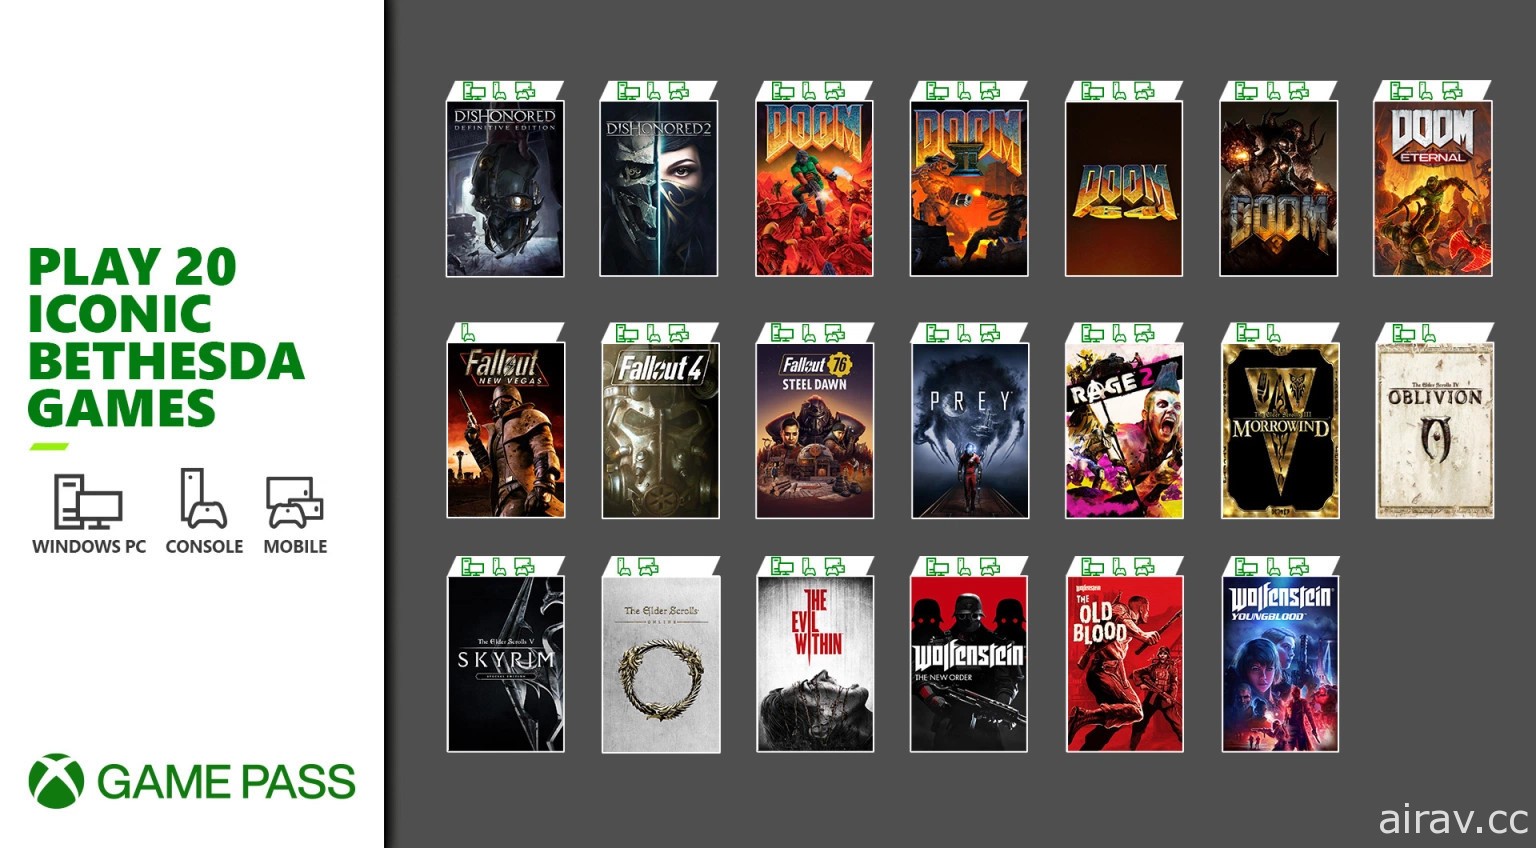 《上古》《異塵》等 20 款 Bethesda 經典遊戲今起加入 Xbox Game Pass 陣容